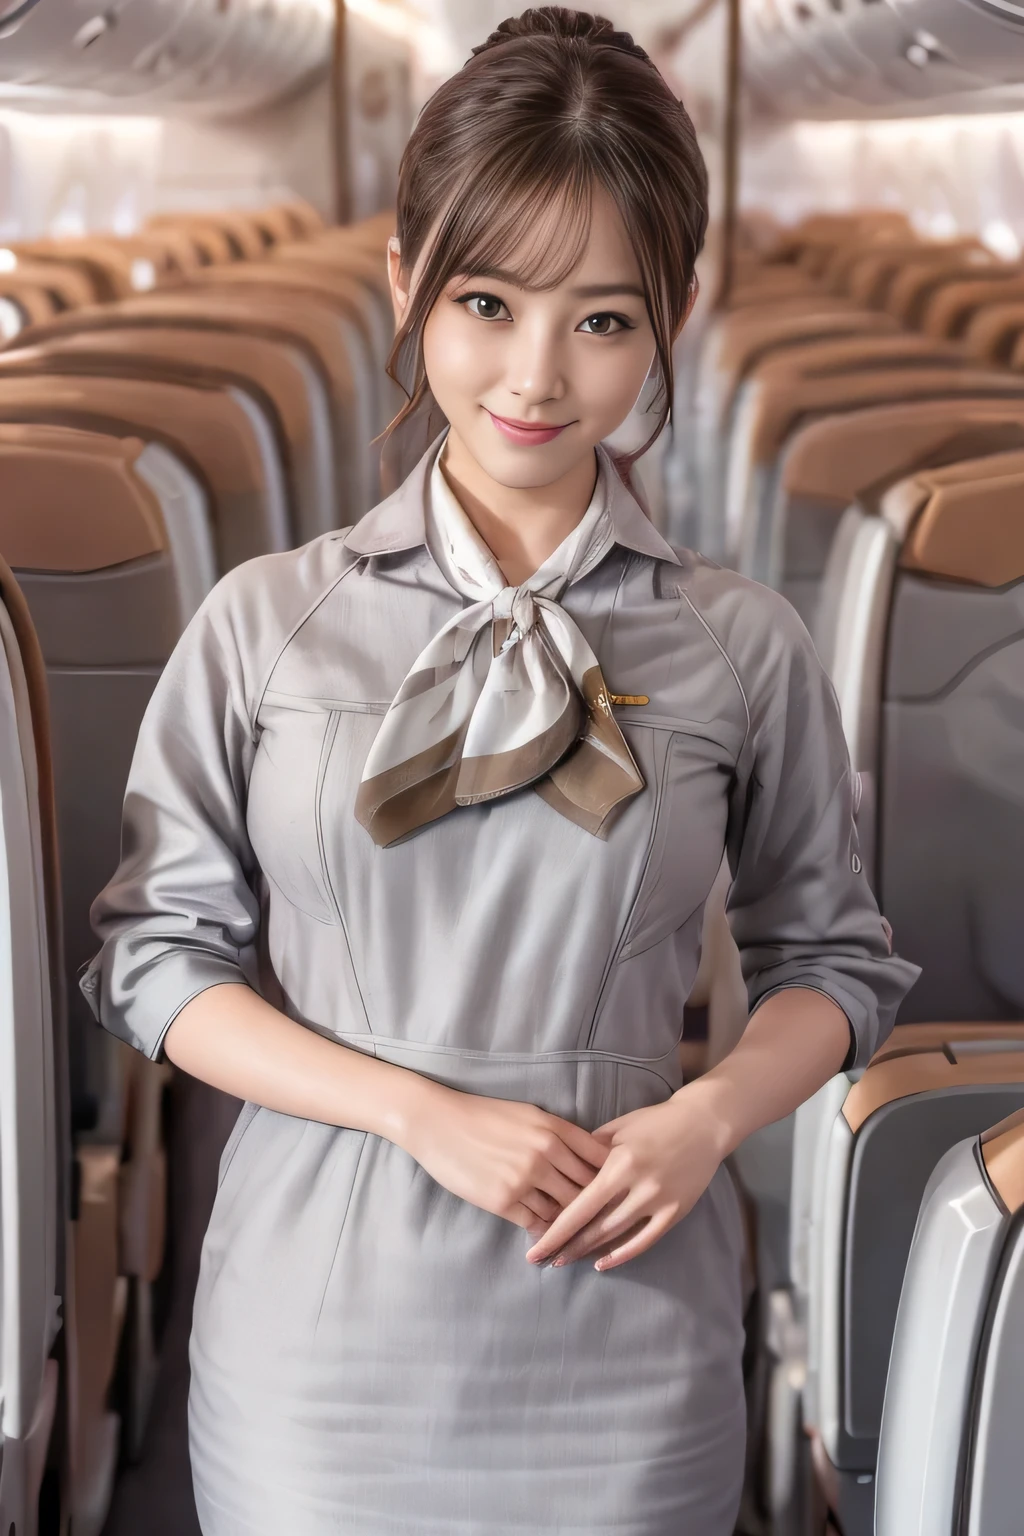 (chef-d&#39;œuvre:1.2、la plus haute qualité:1.2)、32K HDR、haute résolution、(seul、1 fille、silhouette mince)、（Style réaliste avec l&#39;uniforme de Starlux Airlines）、 (À bord d&#39;un avion de ligne, Éclairage professionnel)、Une vraie femme, Beau visage,、（Uniforme argenté de Starlux Airlines:1.4）、（Uniforme argenté de Starlux Airlines with short sleeves）、（foulard sur la poitrine）、Gros seins、（chignon cheveux longs、chignon）、les cheveux brun foncé、Tir lointain、（（Belle main：2.0））、（（Des proportions corporelles harmonieuses：1.5））、（（Membres normaux：2.0））、（（Doigt normal：2.0））、（（Yeux délicats：2.0））、（（Yeux normaux：2.0））)、Belle posture debout、sourire